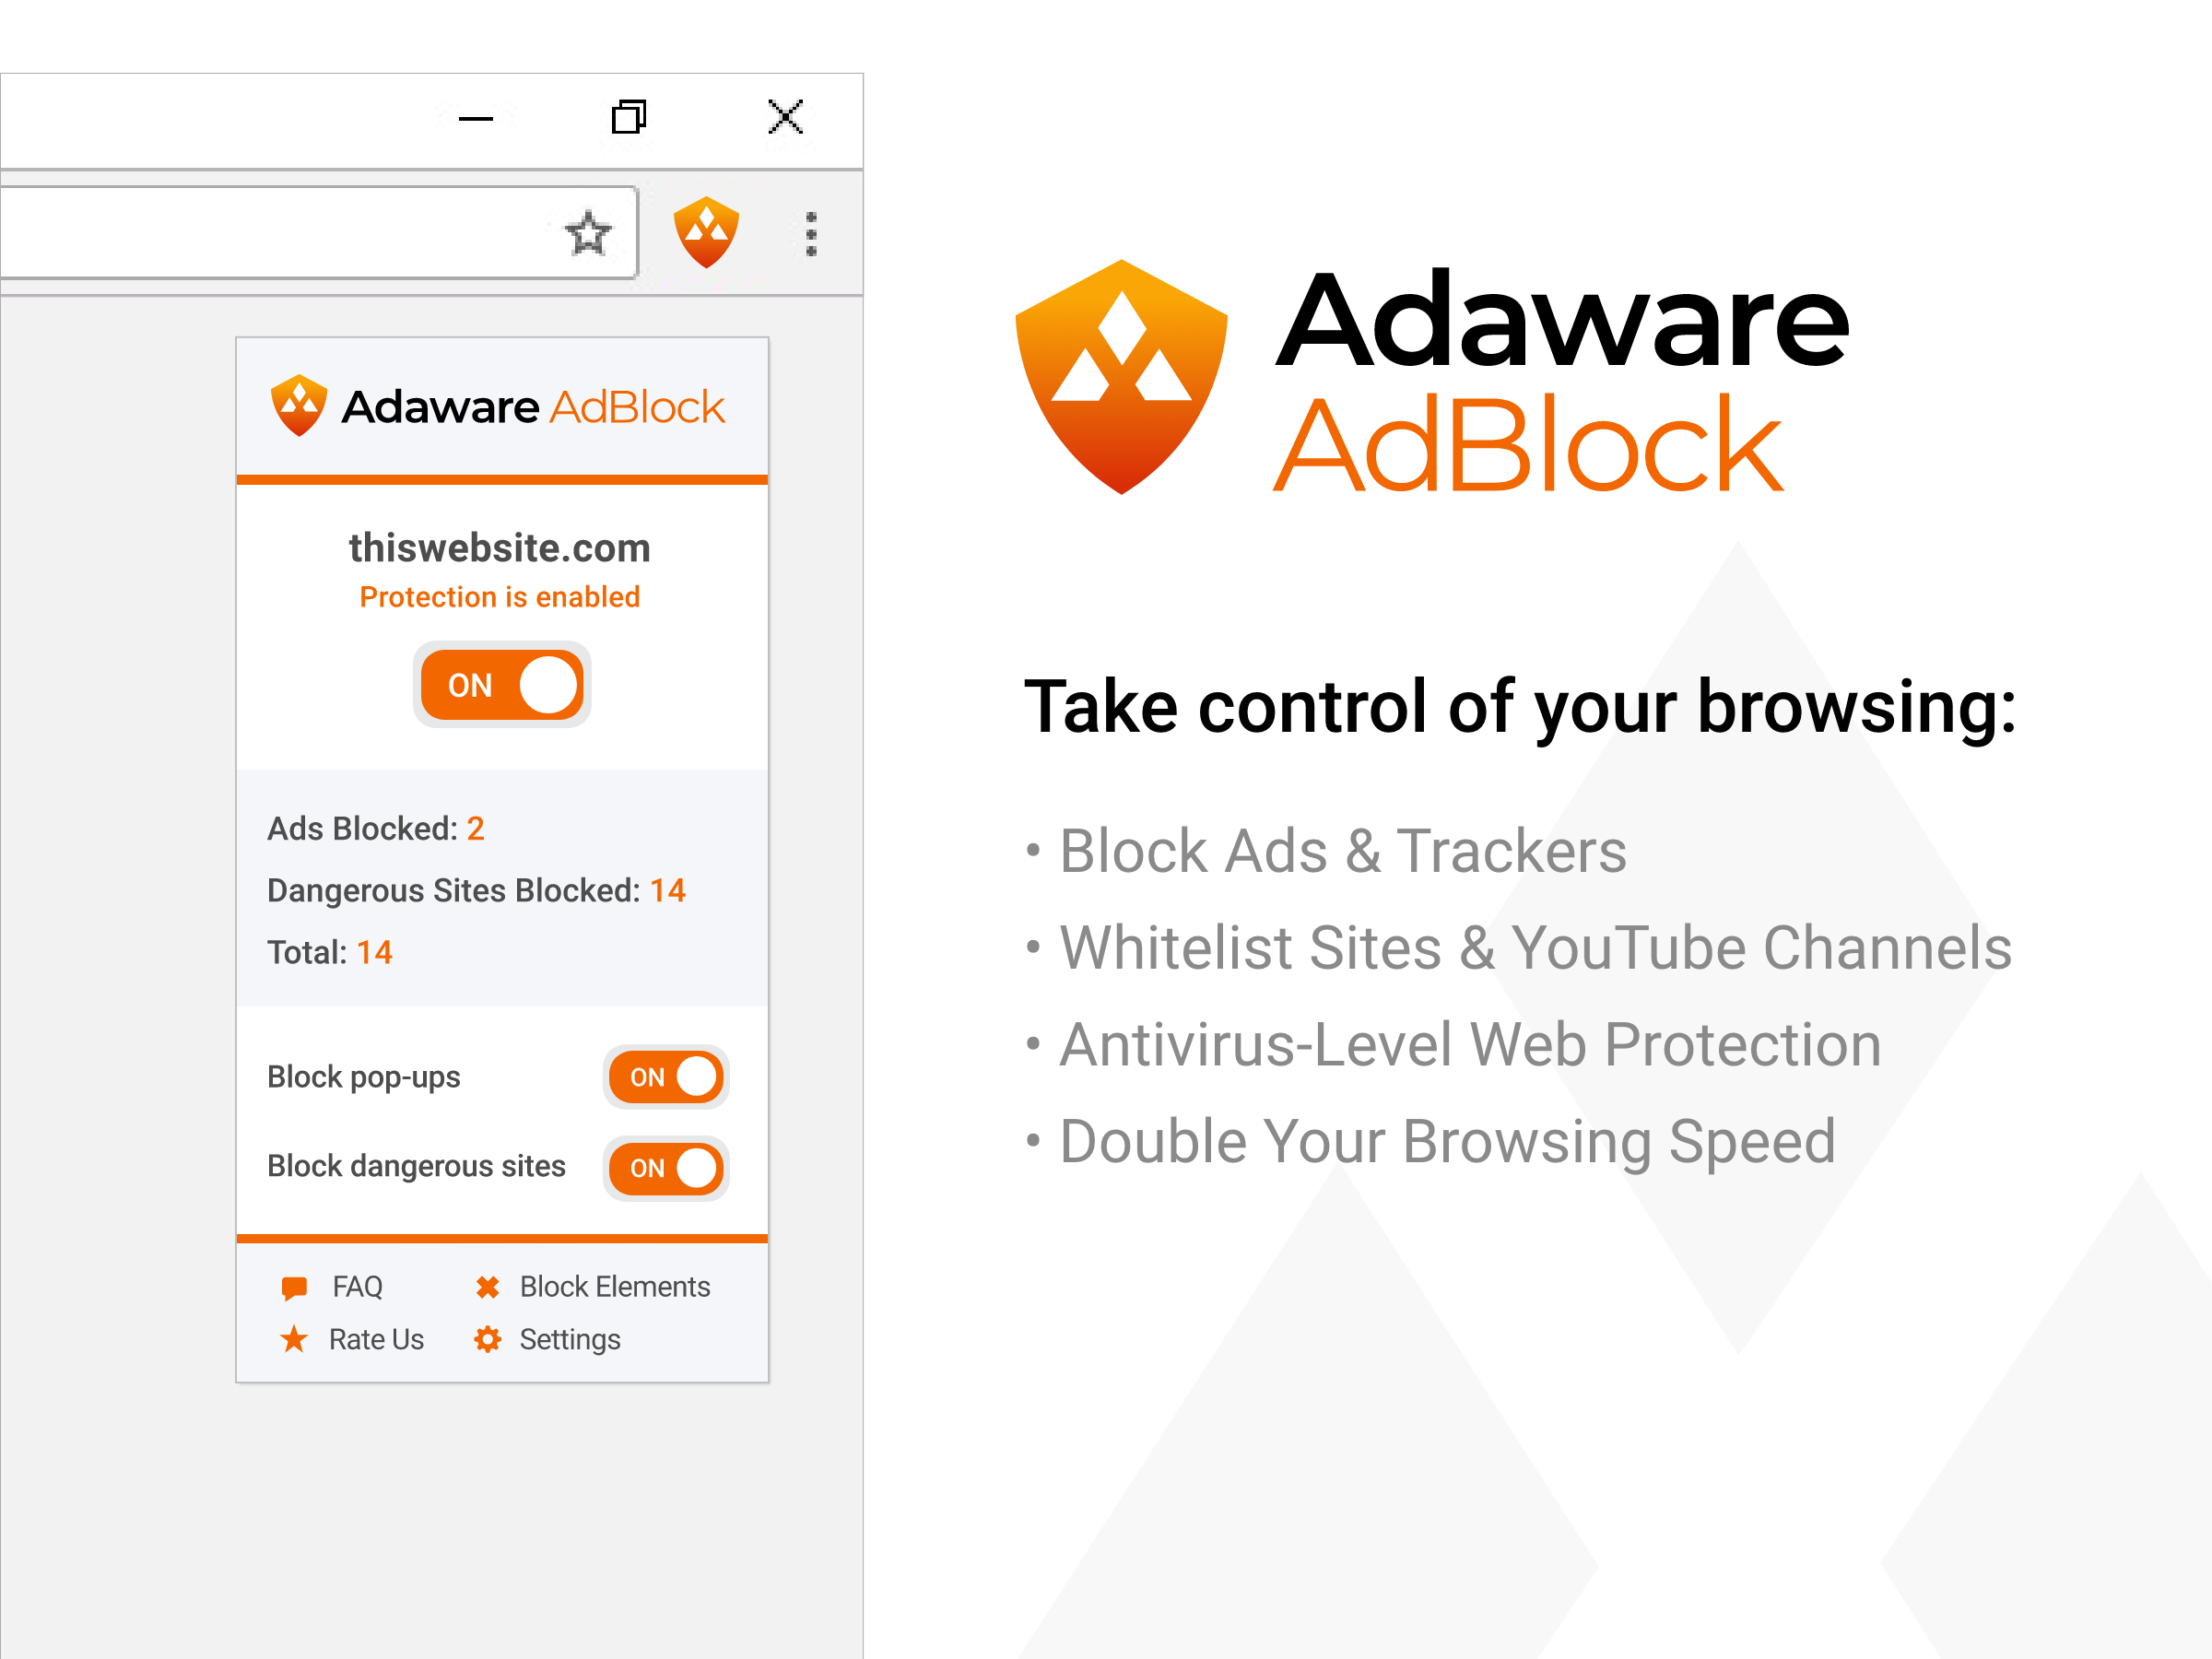 Adaware AdBlock